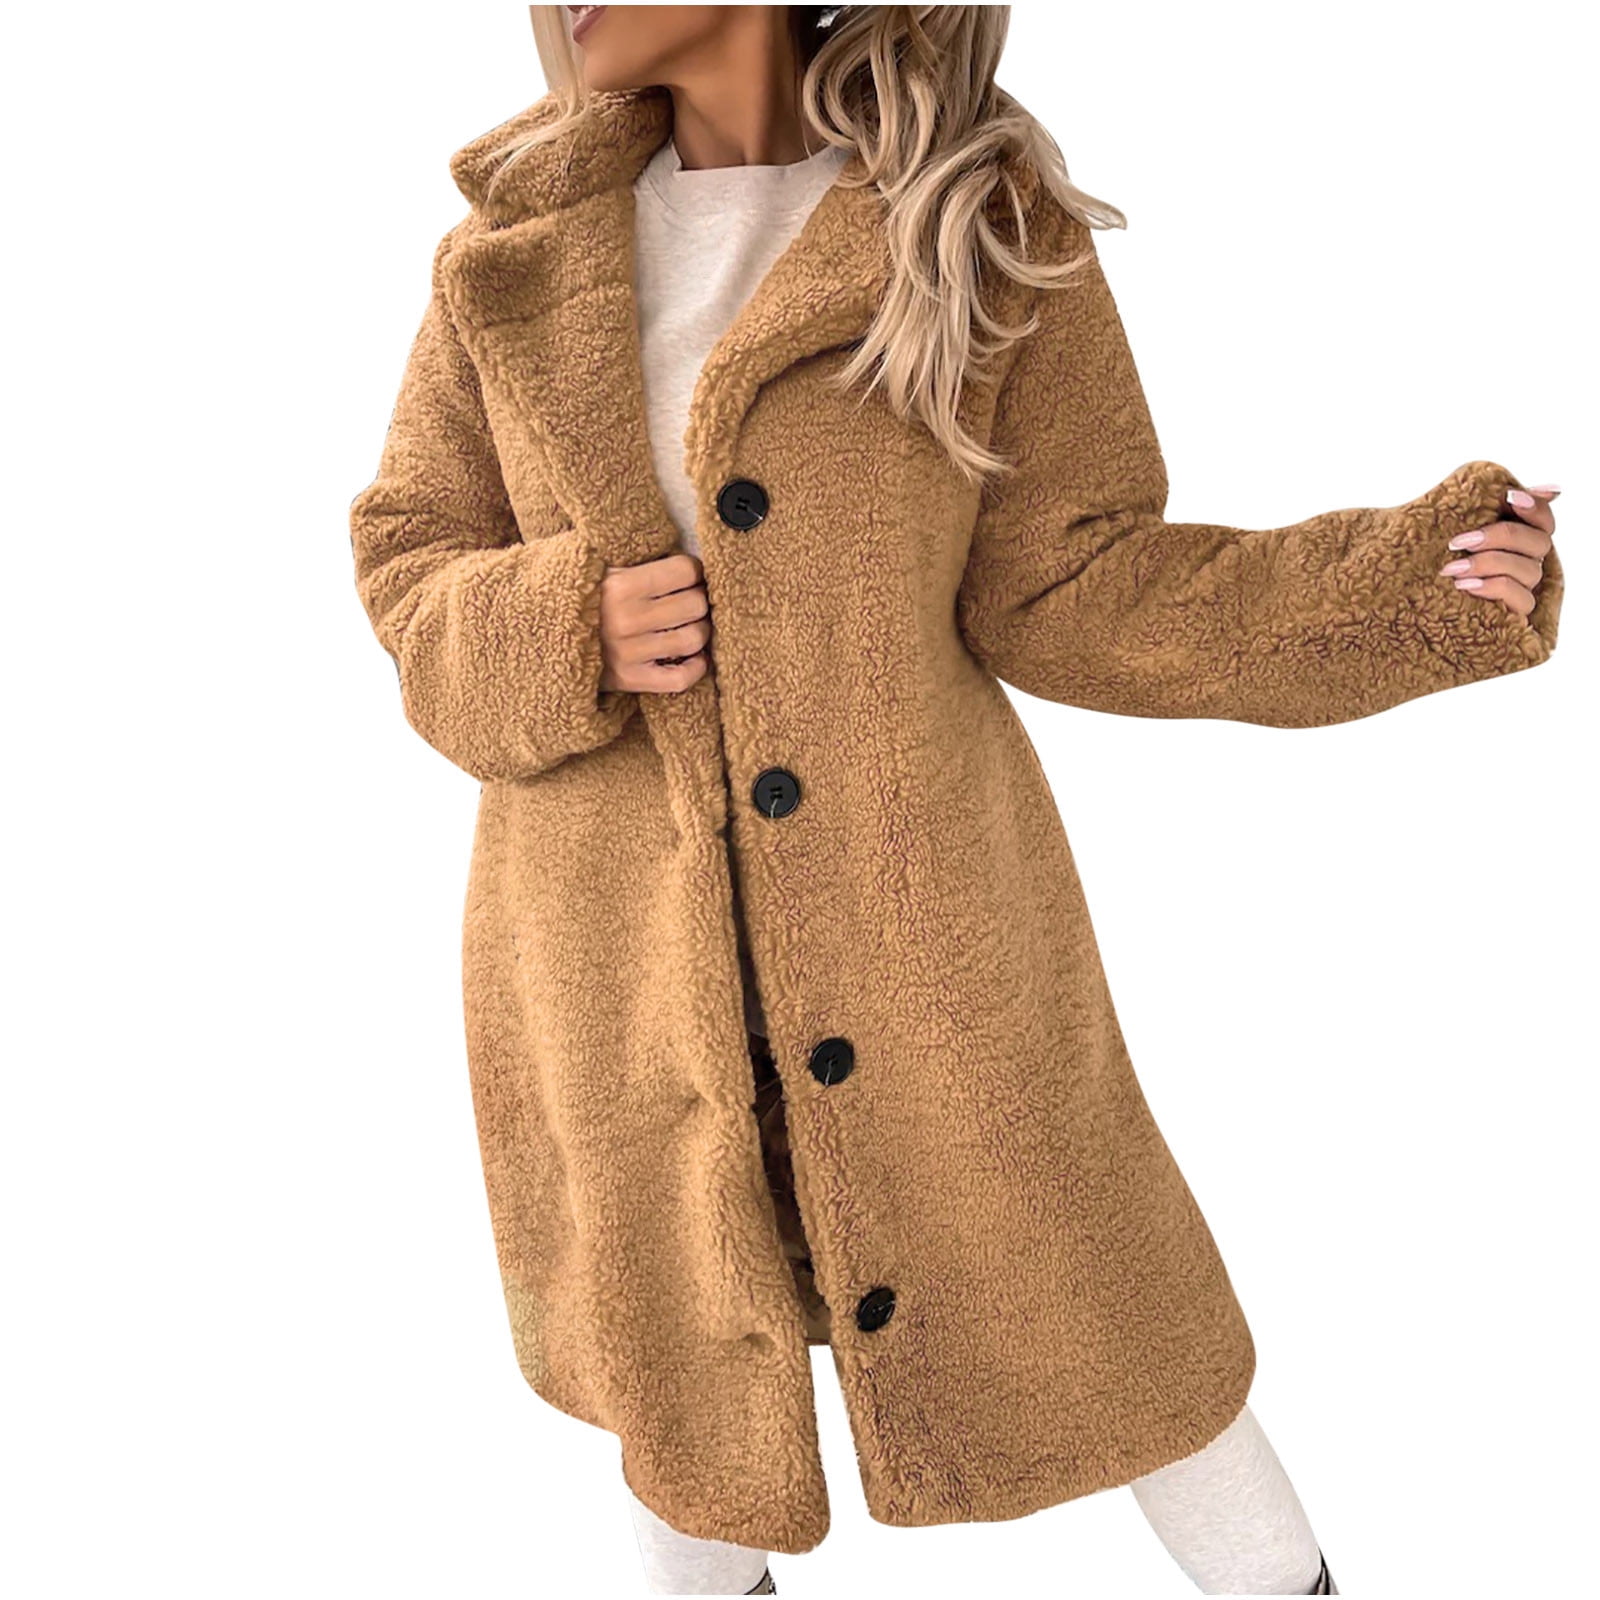 XFLWAM Womens Winter Fuzzy Fleece Open Front Long Cardigan Jackets Lapel  Solid Color Sherpa Coat Outwear Wine Red XL 